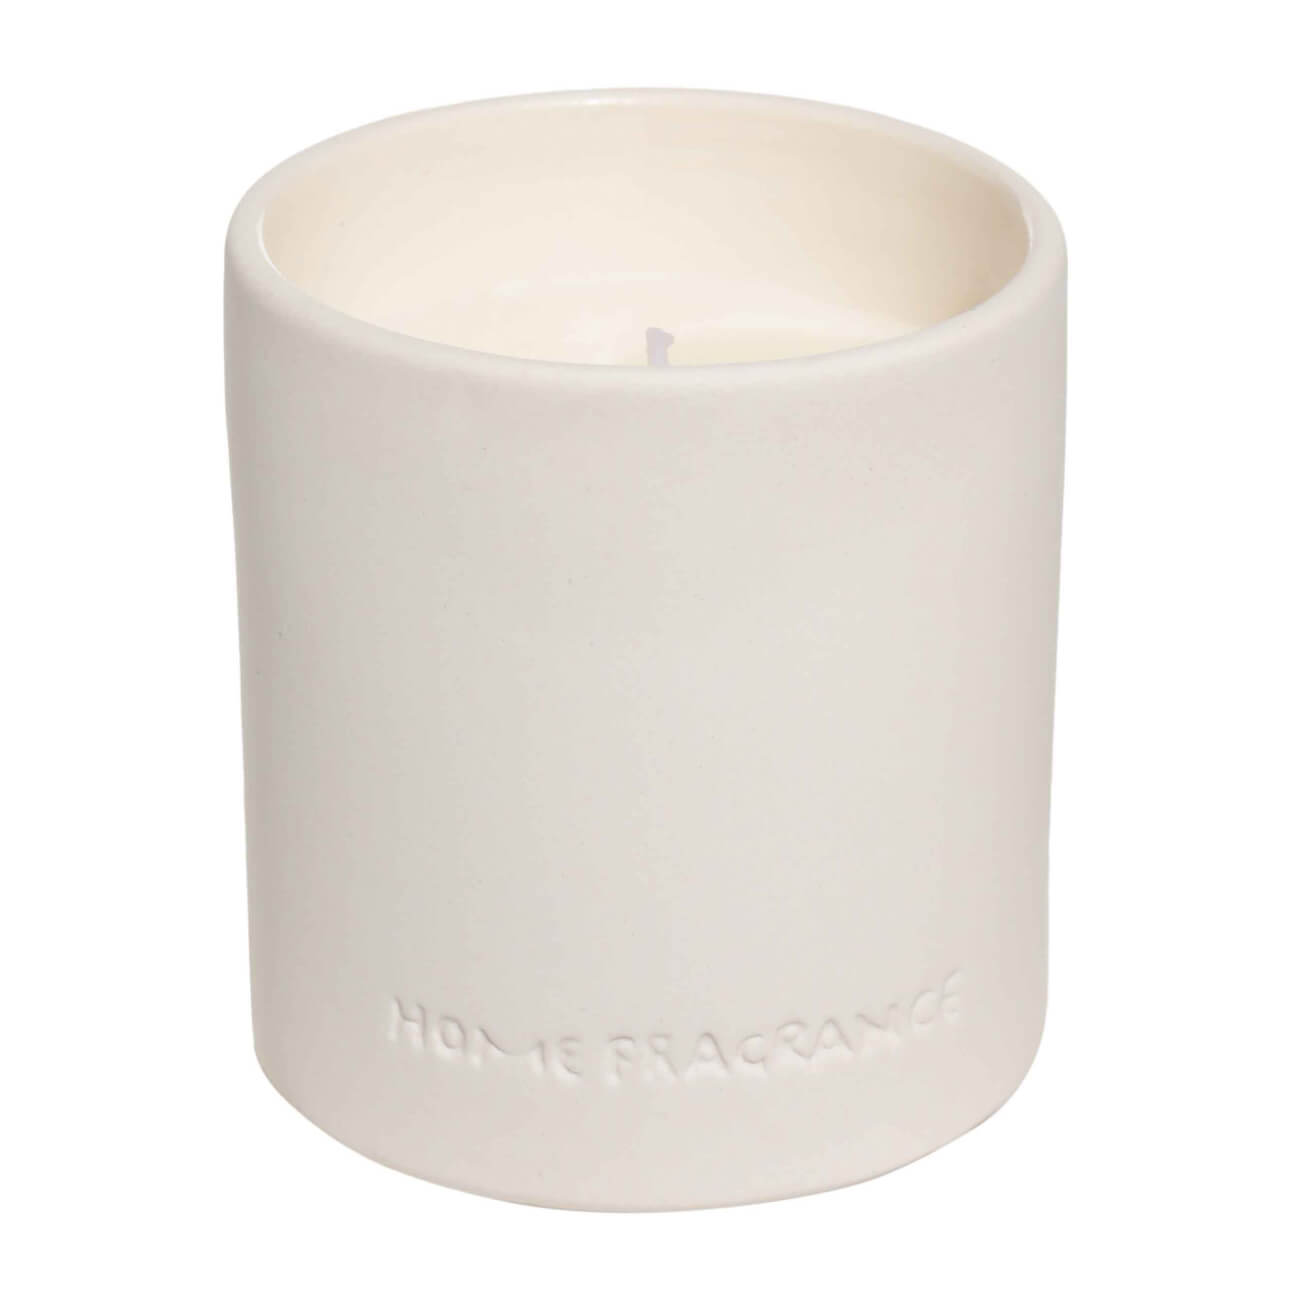 Свеча ароматическая, 9 см, в подсвечнике, керамика, белая, Neroli portofino, B&W свеча ароматическая 9 см в подсвечнике керамика белая neroli portofino b